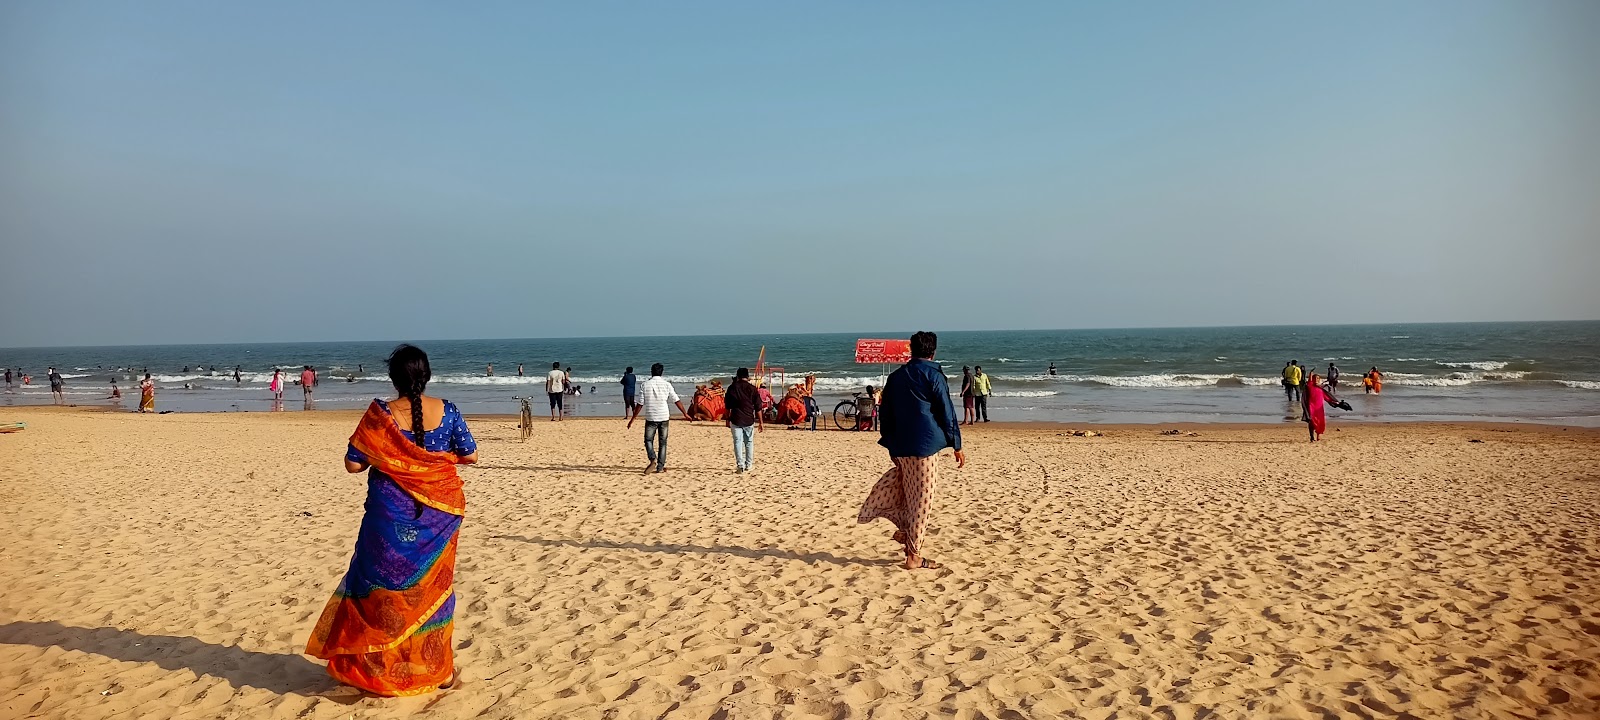 Suryalanka Beach'in fotoğrafı kısmen temiz temizlik seviyesi ile